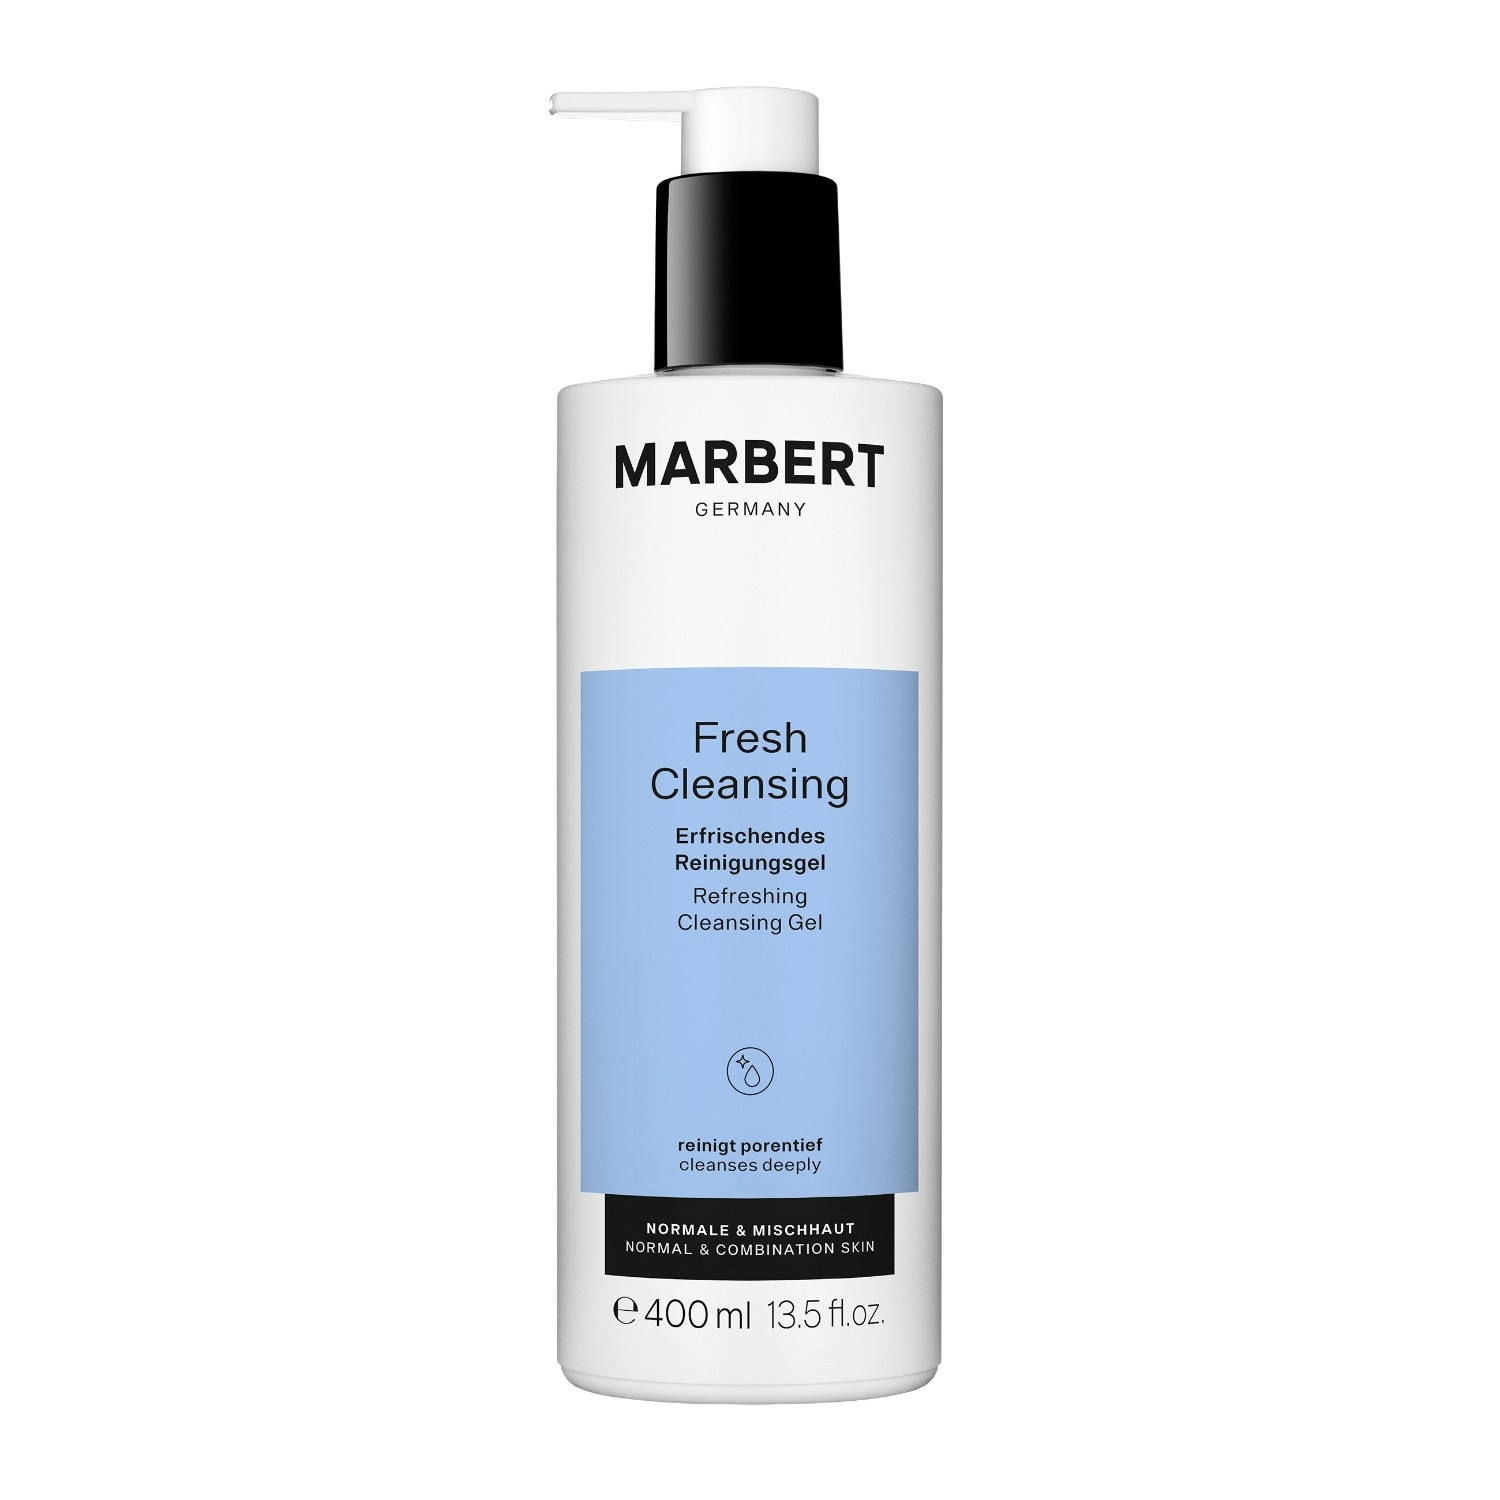 Marbert Fresh Cleansing Refreshing Cleansing Gel